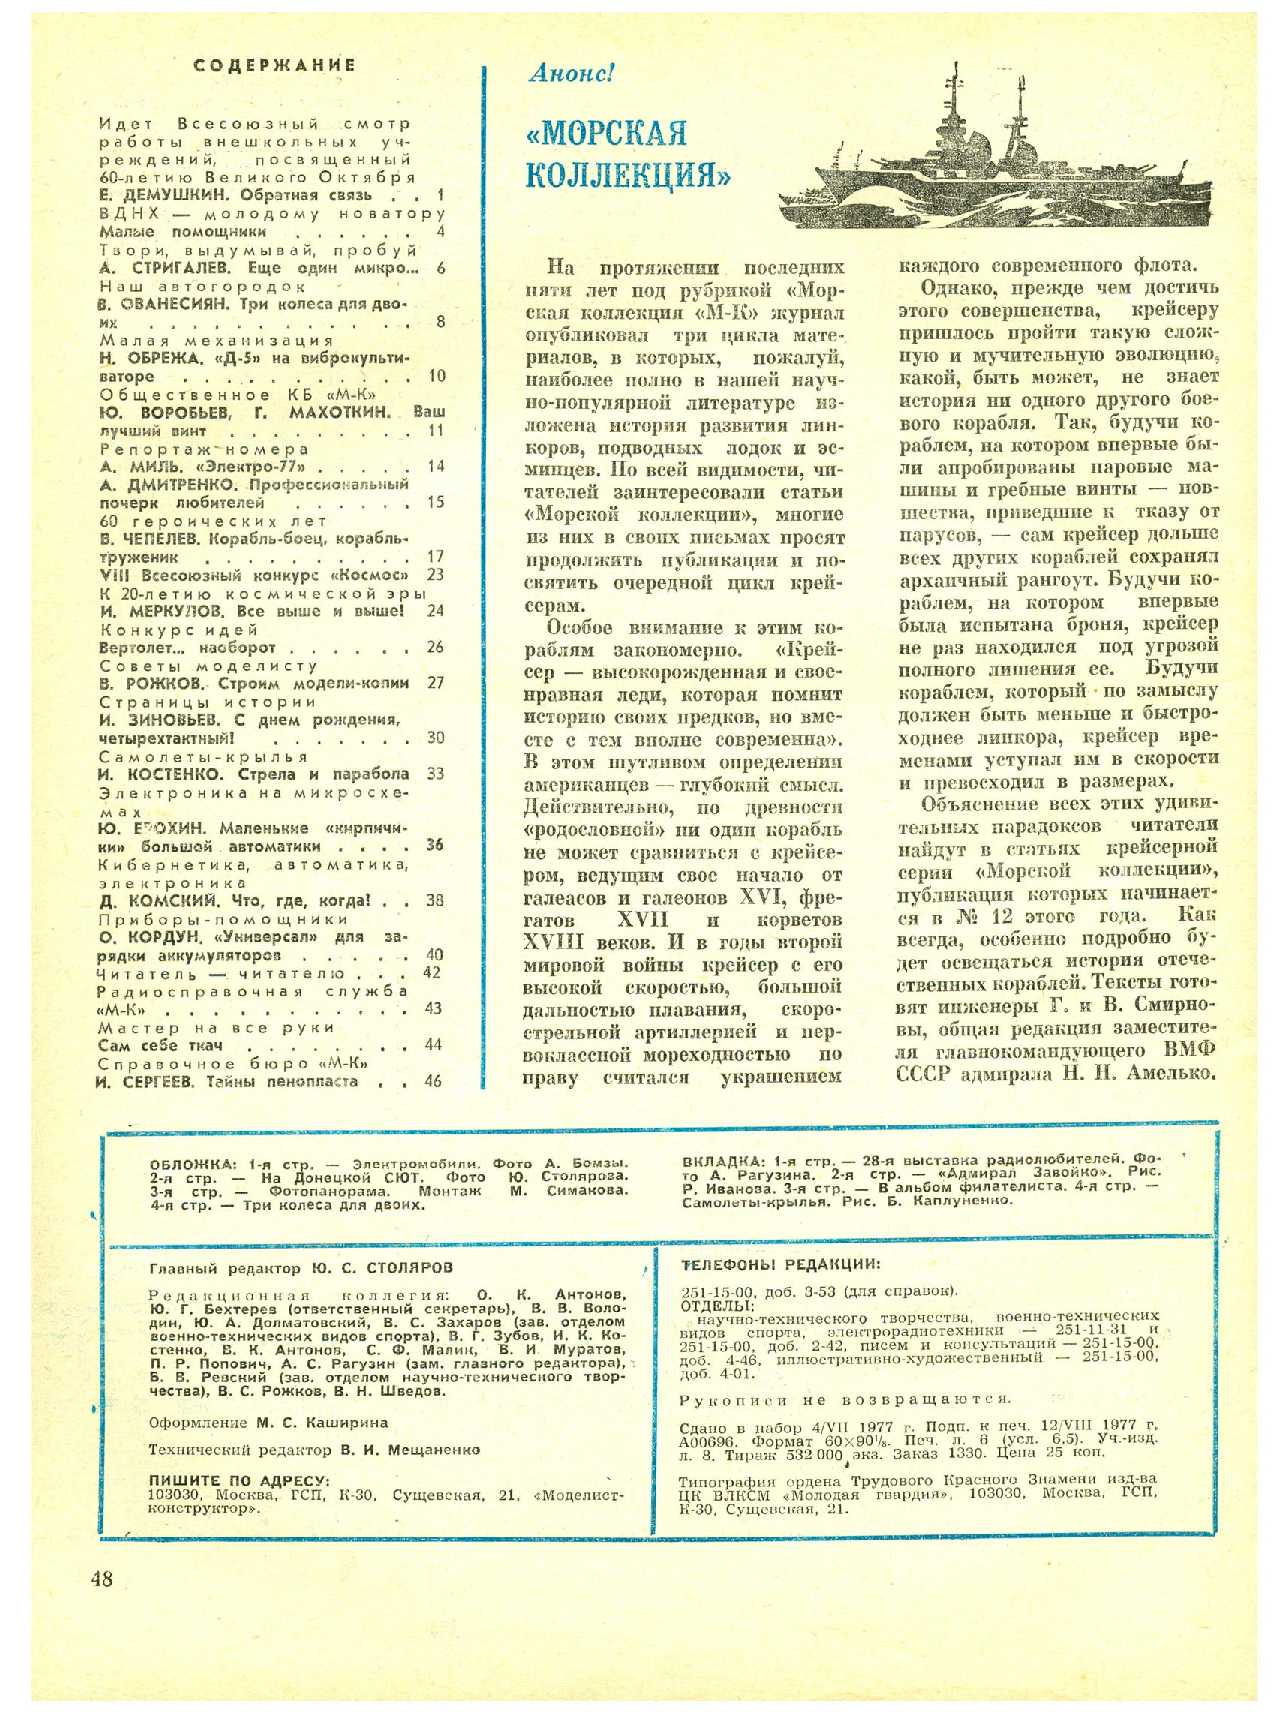 МК 9, 1977, 48 c.